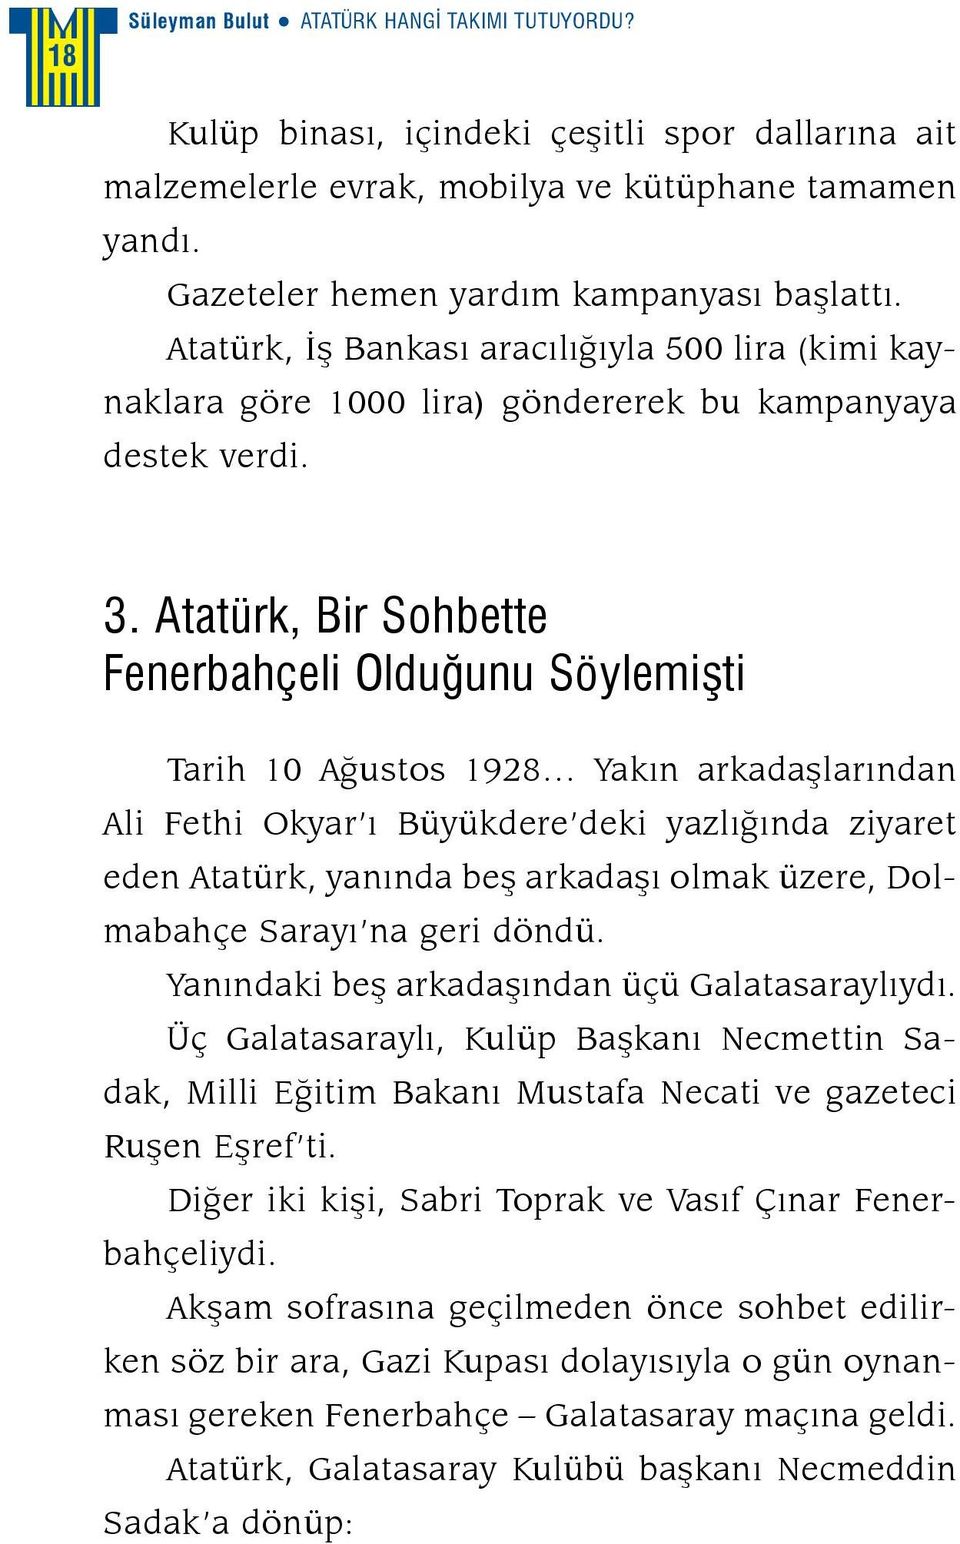 Atatürk, Bir Sohbette Fenerbahçeli Olduğunu Söylemişti Tarih 10 Ağustos 1928 Yakın arkadaşlarından Ali Fethi Okyar ı Büyükdere deki yazlığında ziyaret eden Atatürk, yanında beş arkadaşı olmak üzere,